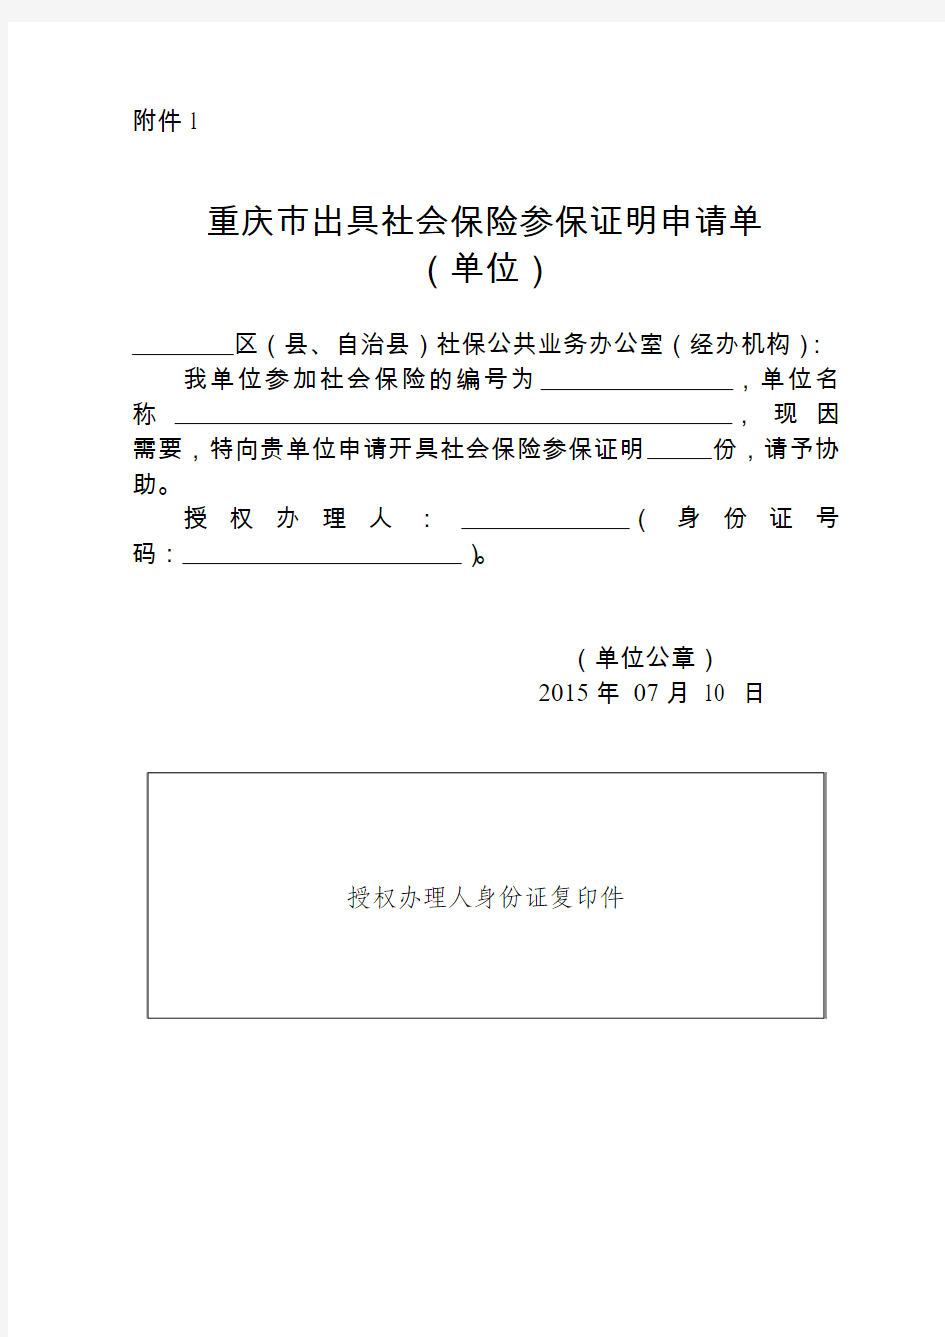 重庆市出具社会保险参保证明申请单(单位)